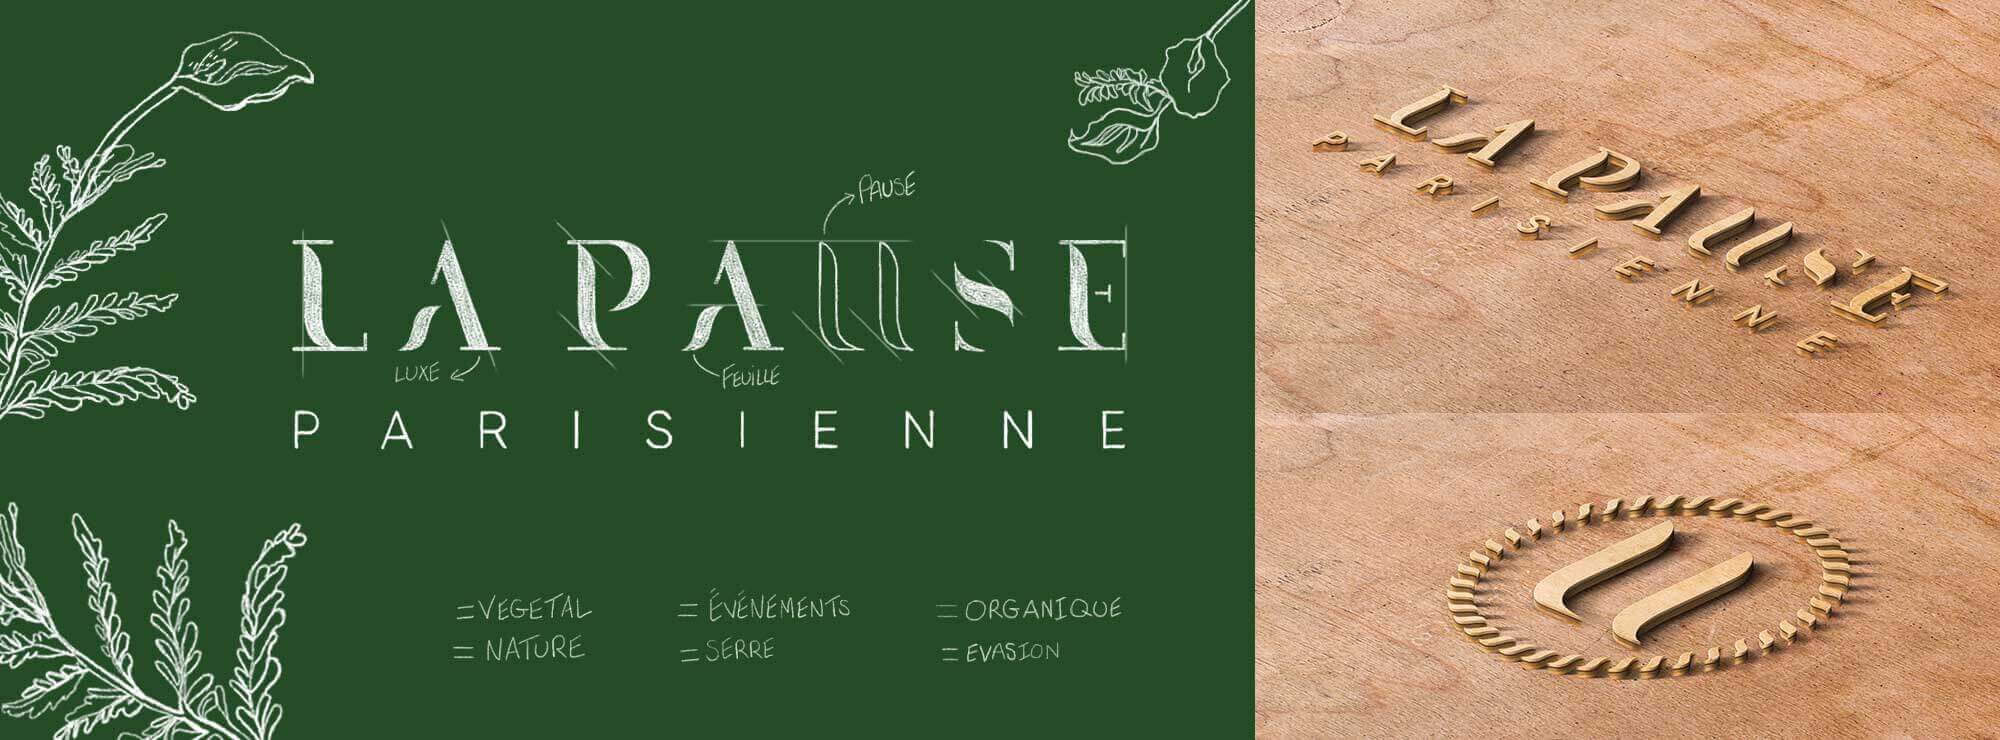 La pause parisienne - un logo et un site très nature